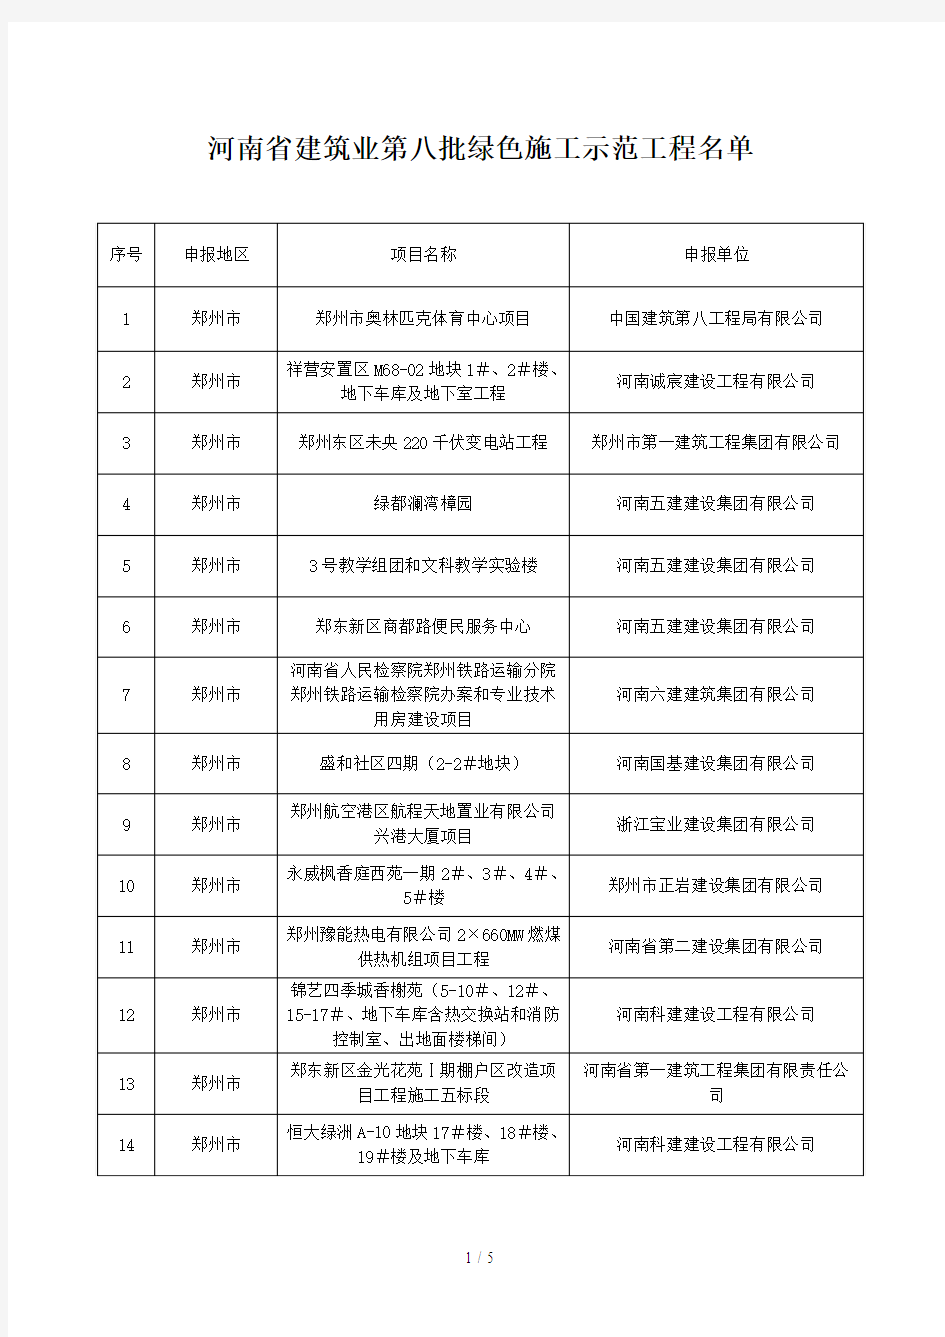 河南省建筑业第八批绿色施工示范工程名单